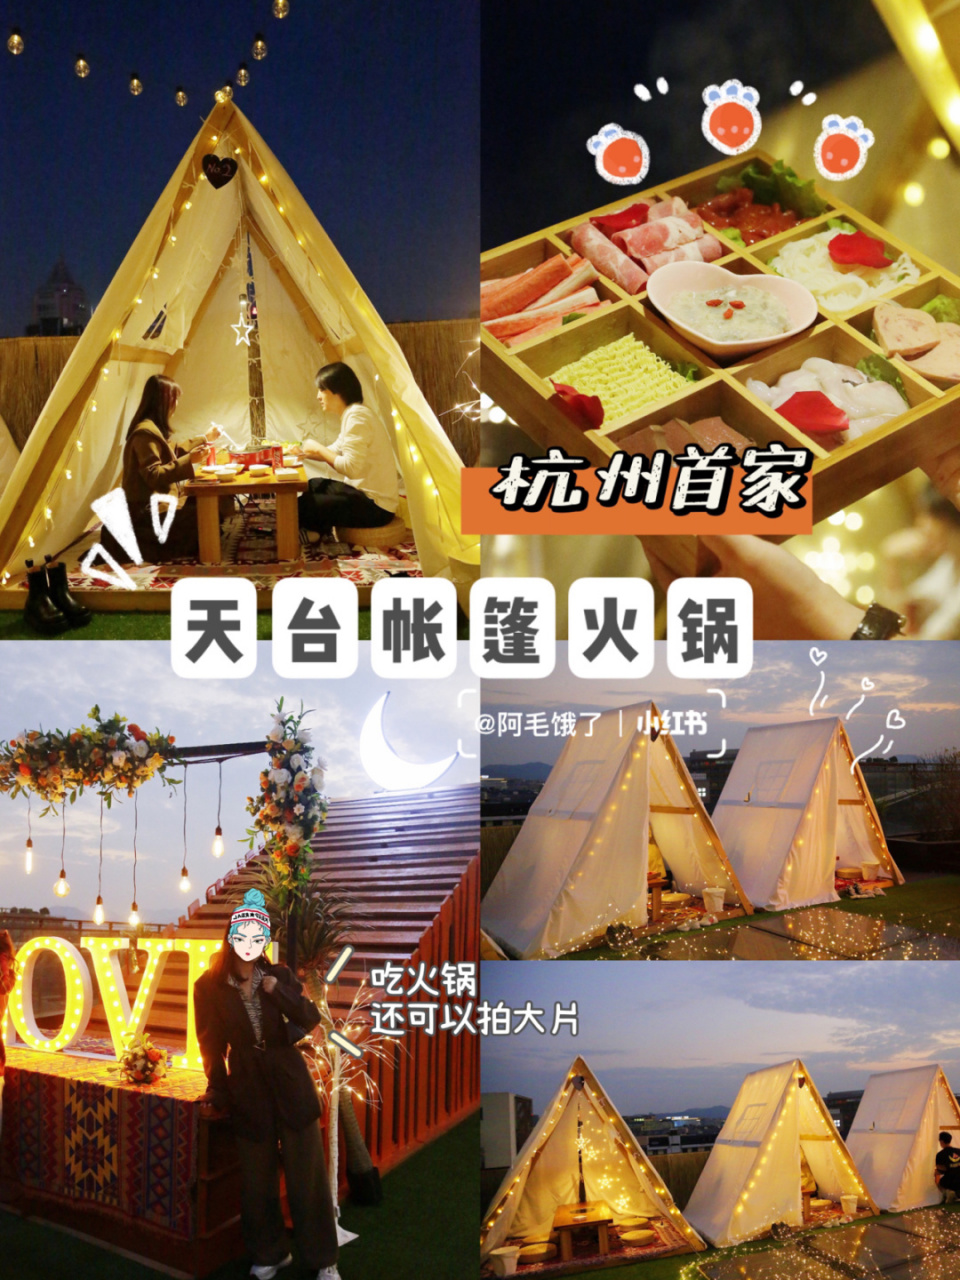 同款天台爱情 6015最近杭州这家天台月光帐篷火锅实在是太火了!